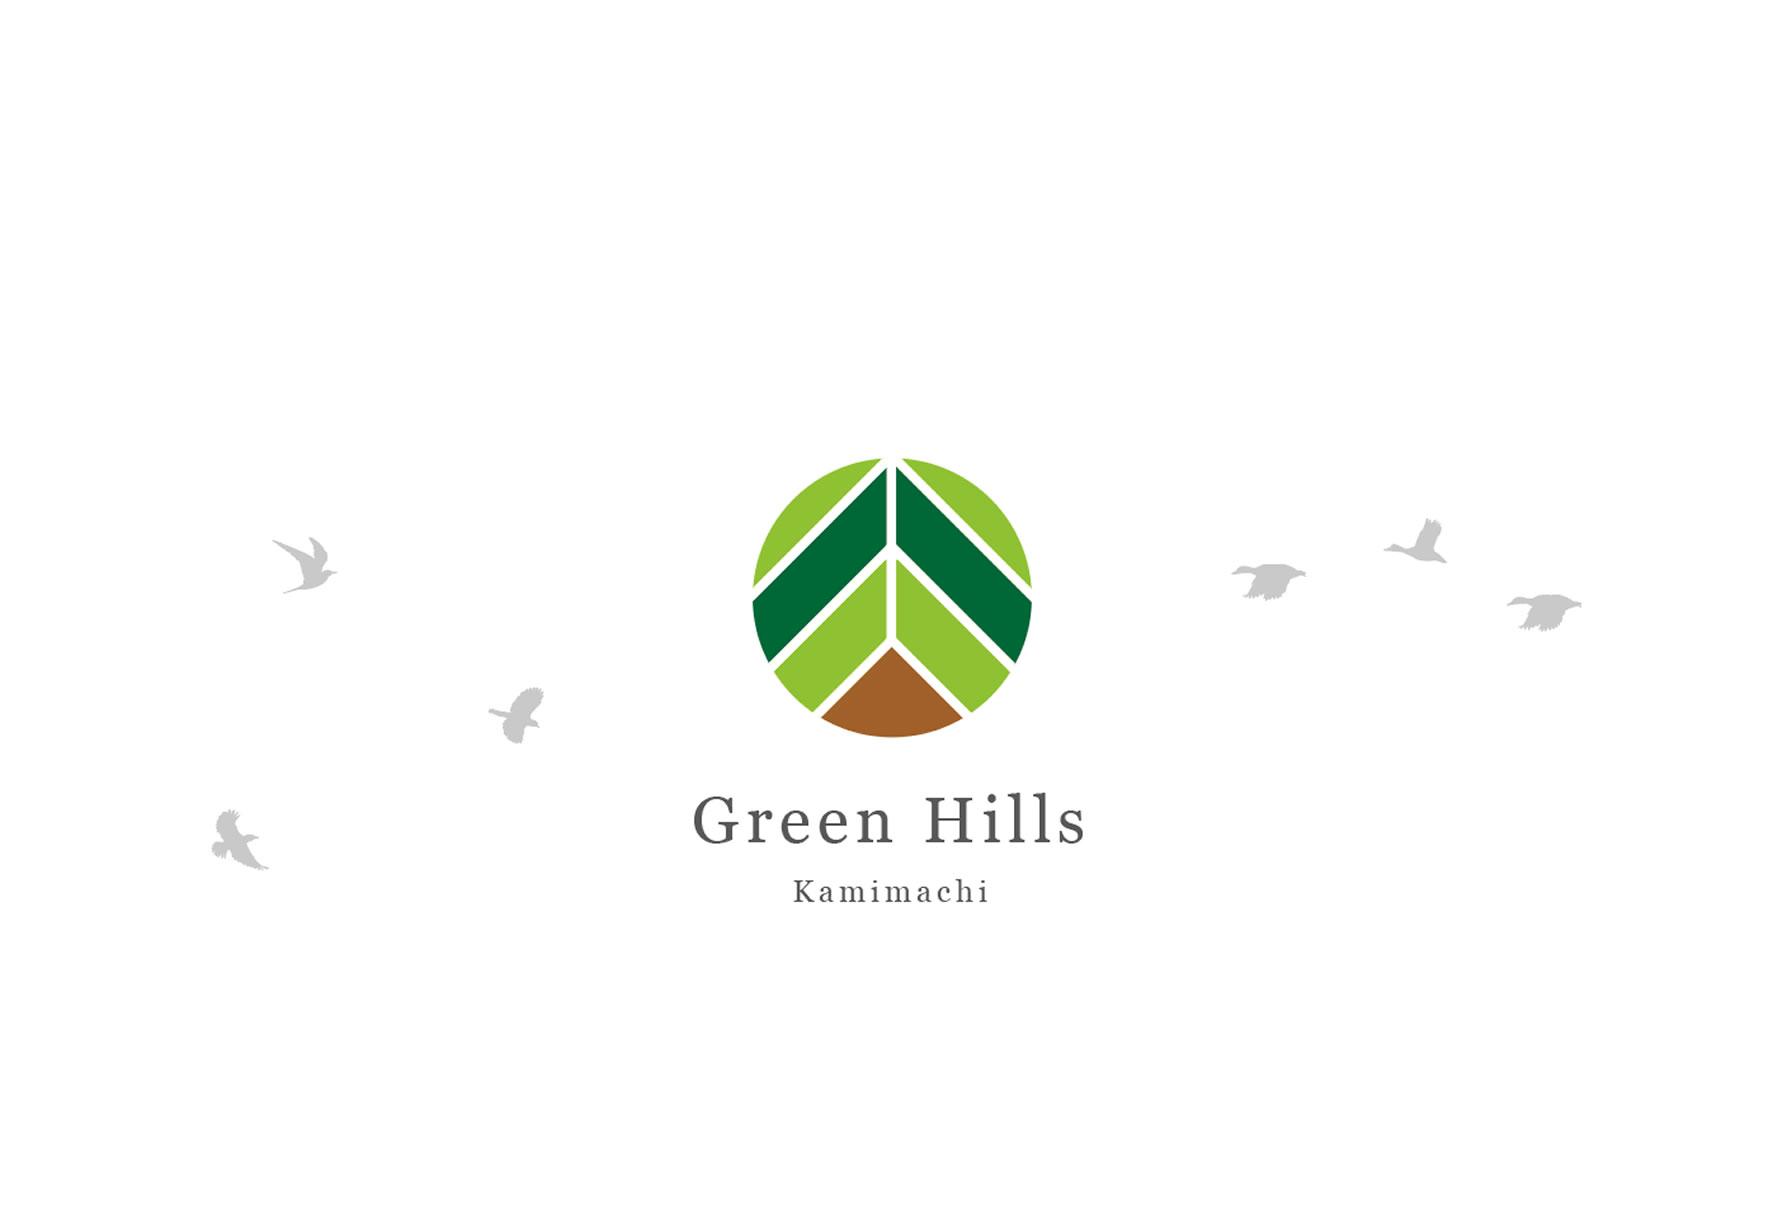 Green Hills Kamimachiの分譲地は全てご成約済みとなりました。